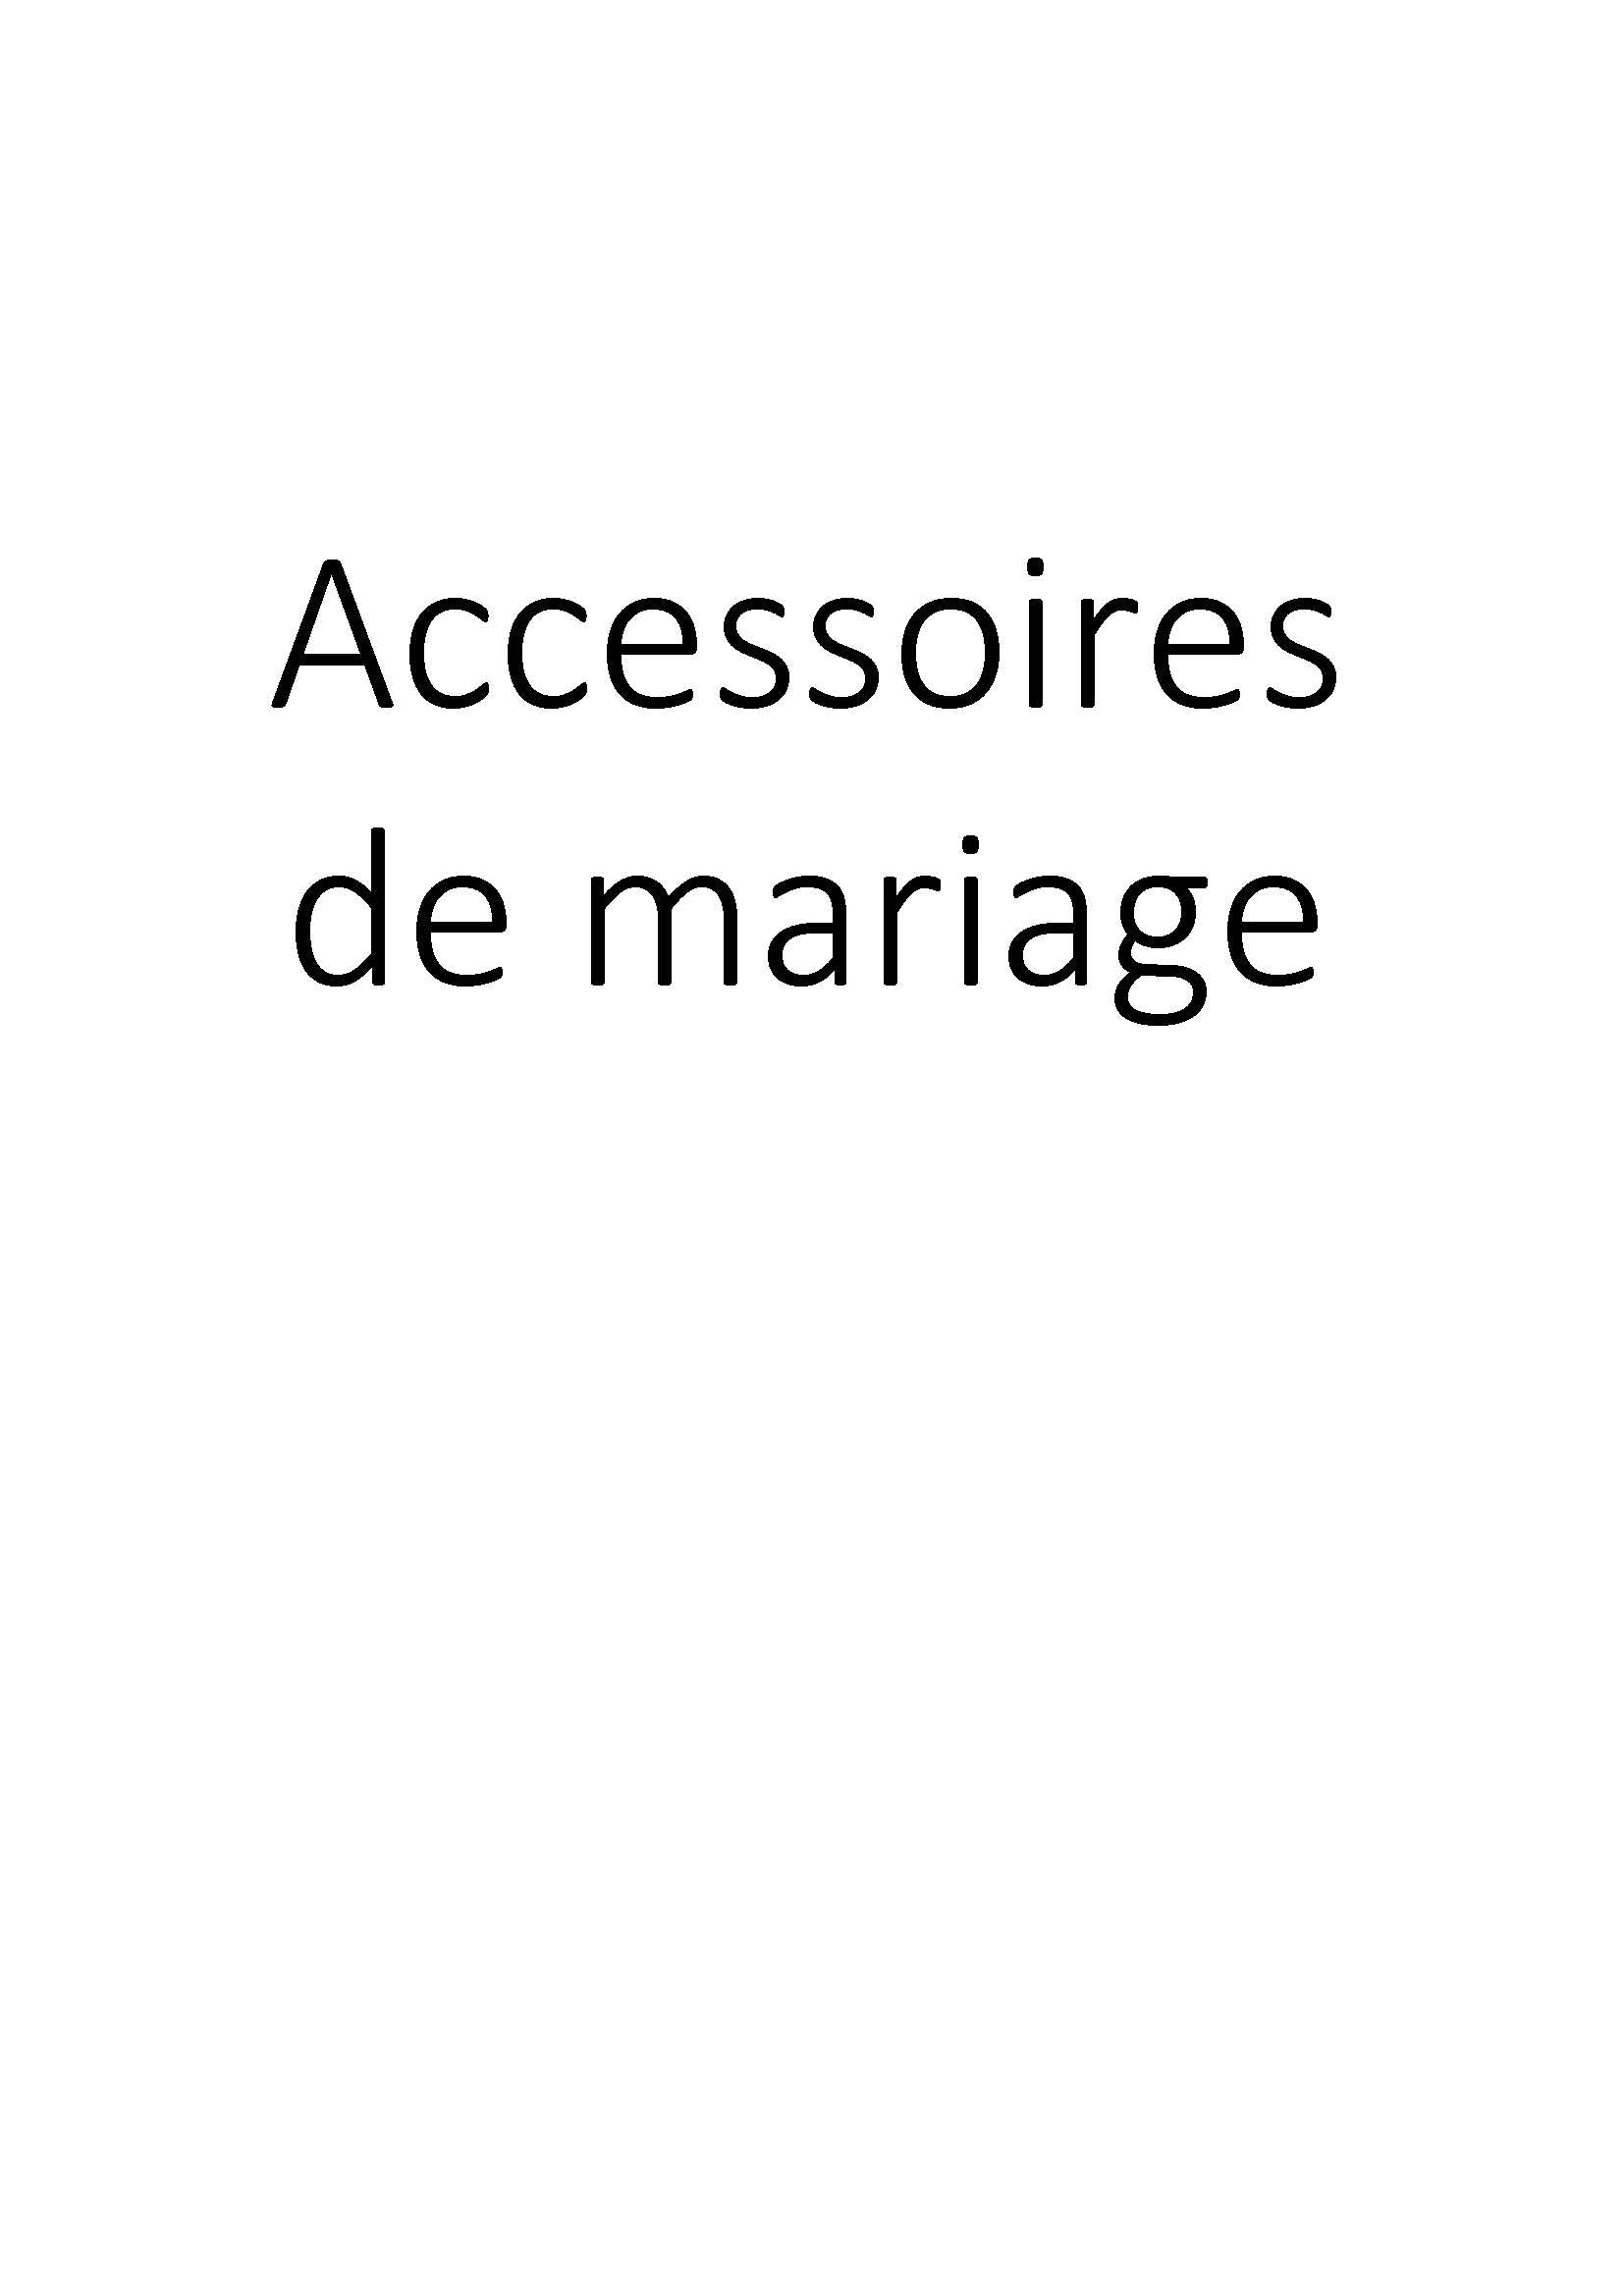 Accessoires de mariage clicktofournisseur.com